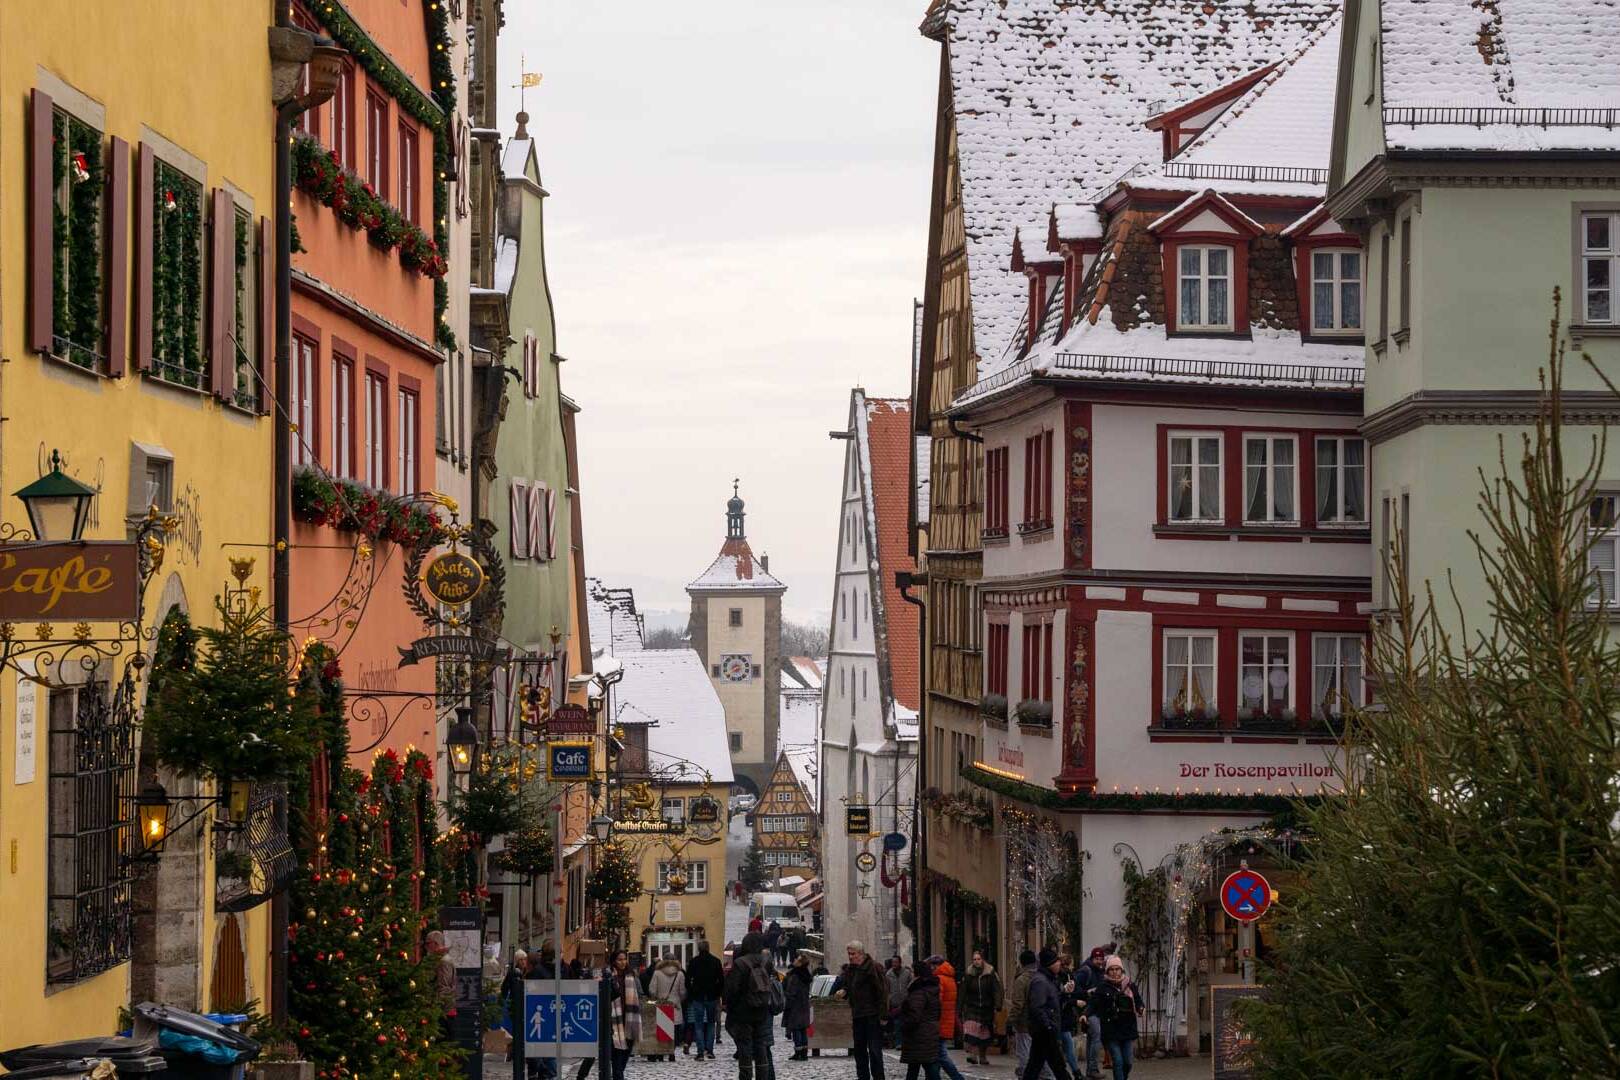 Rothenburg ob der tauber na Rota Romantica da Alemanha